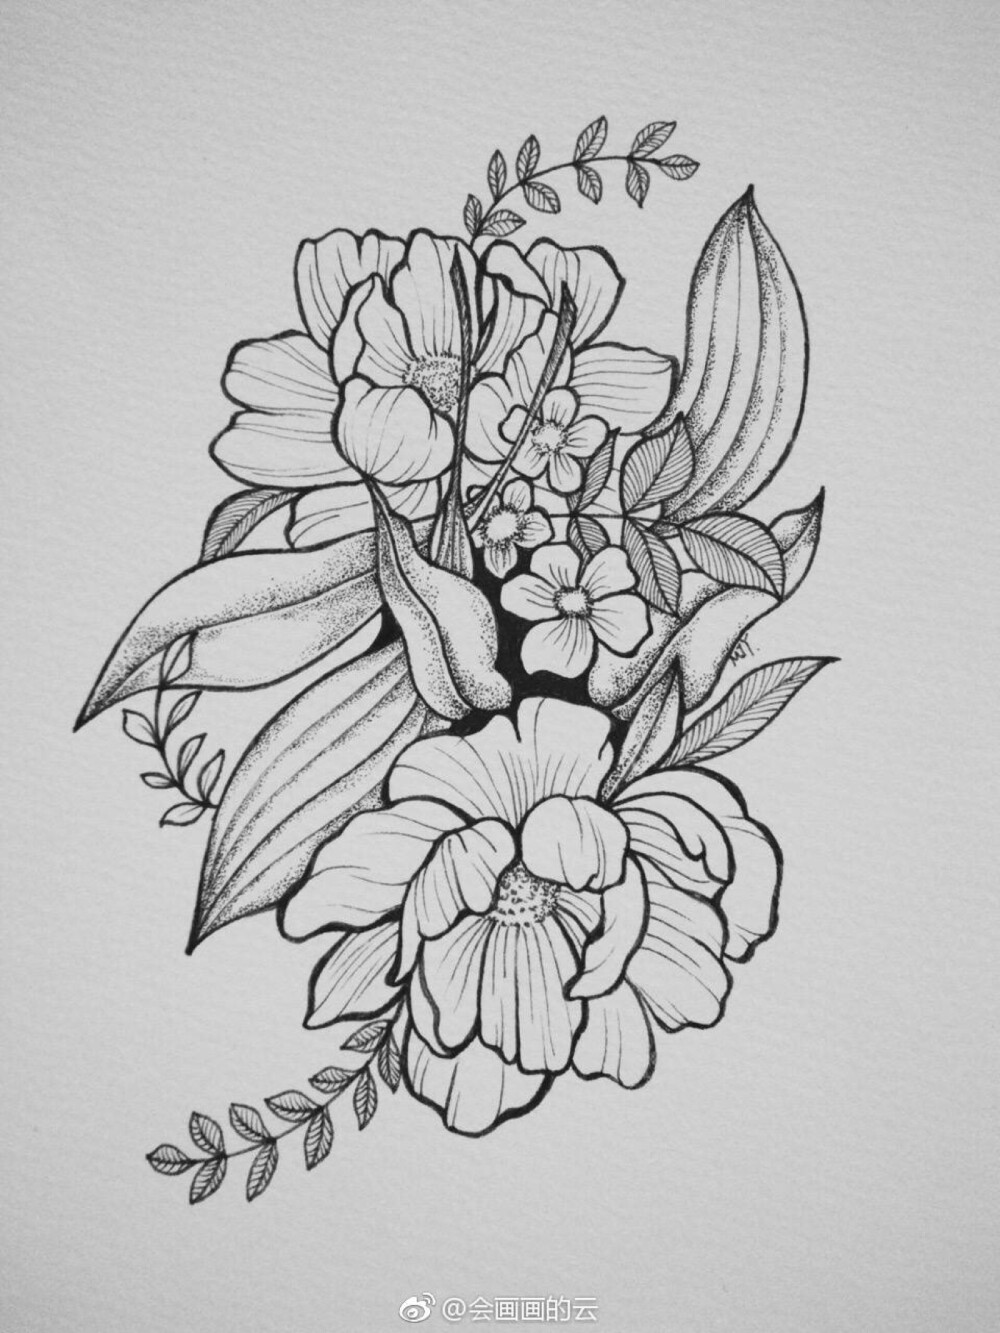 黑白线描 花卉